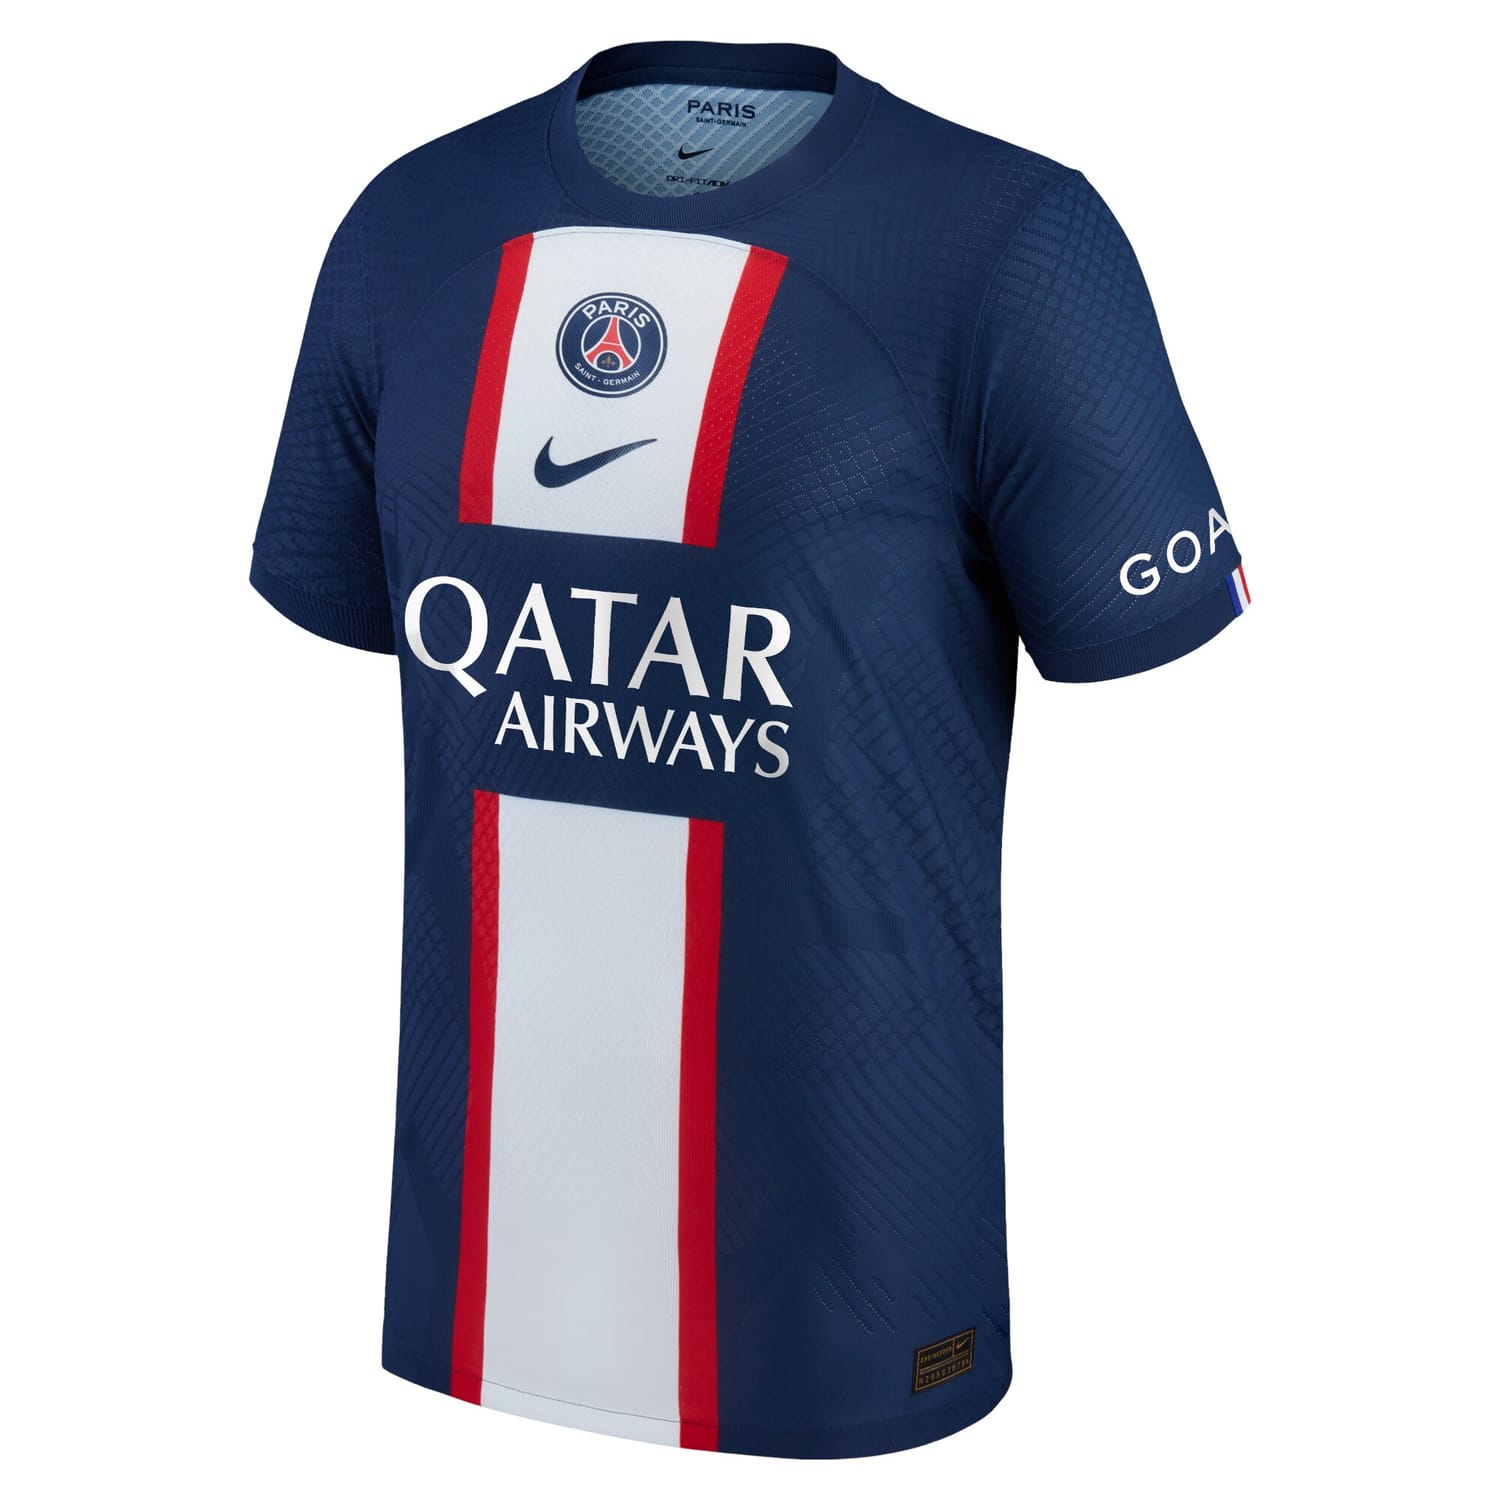 Ligue 1 Paris Saint-Germain Home Authentic Jersey Shirt Blue 2022-23 player Neymar Jr. printing for Men